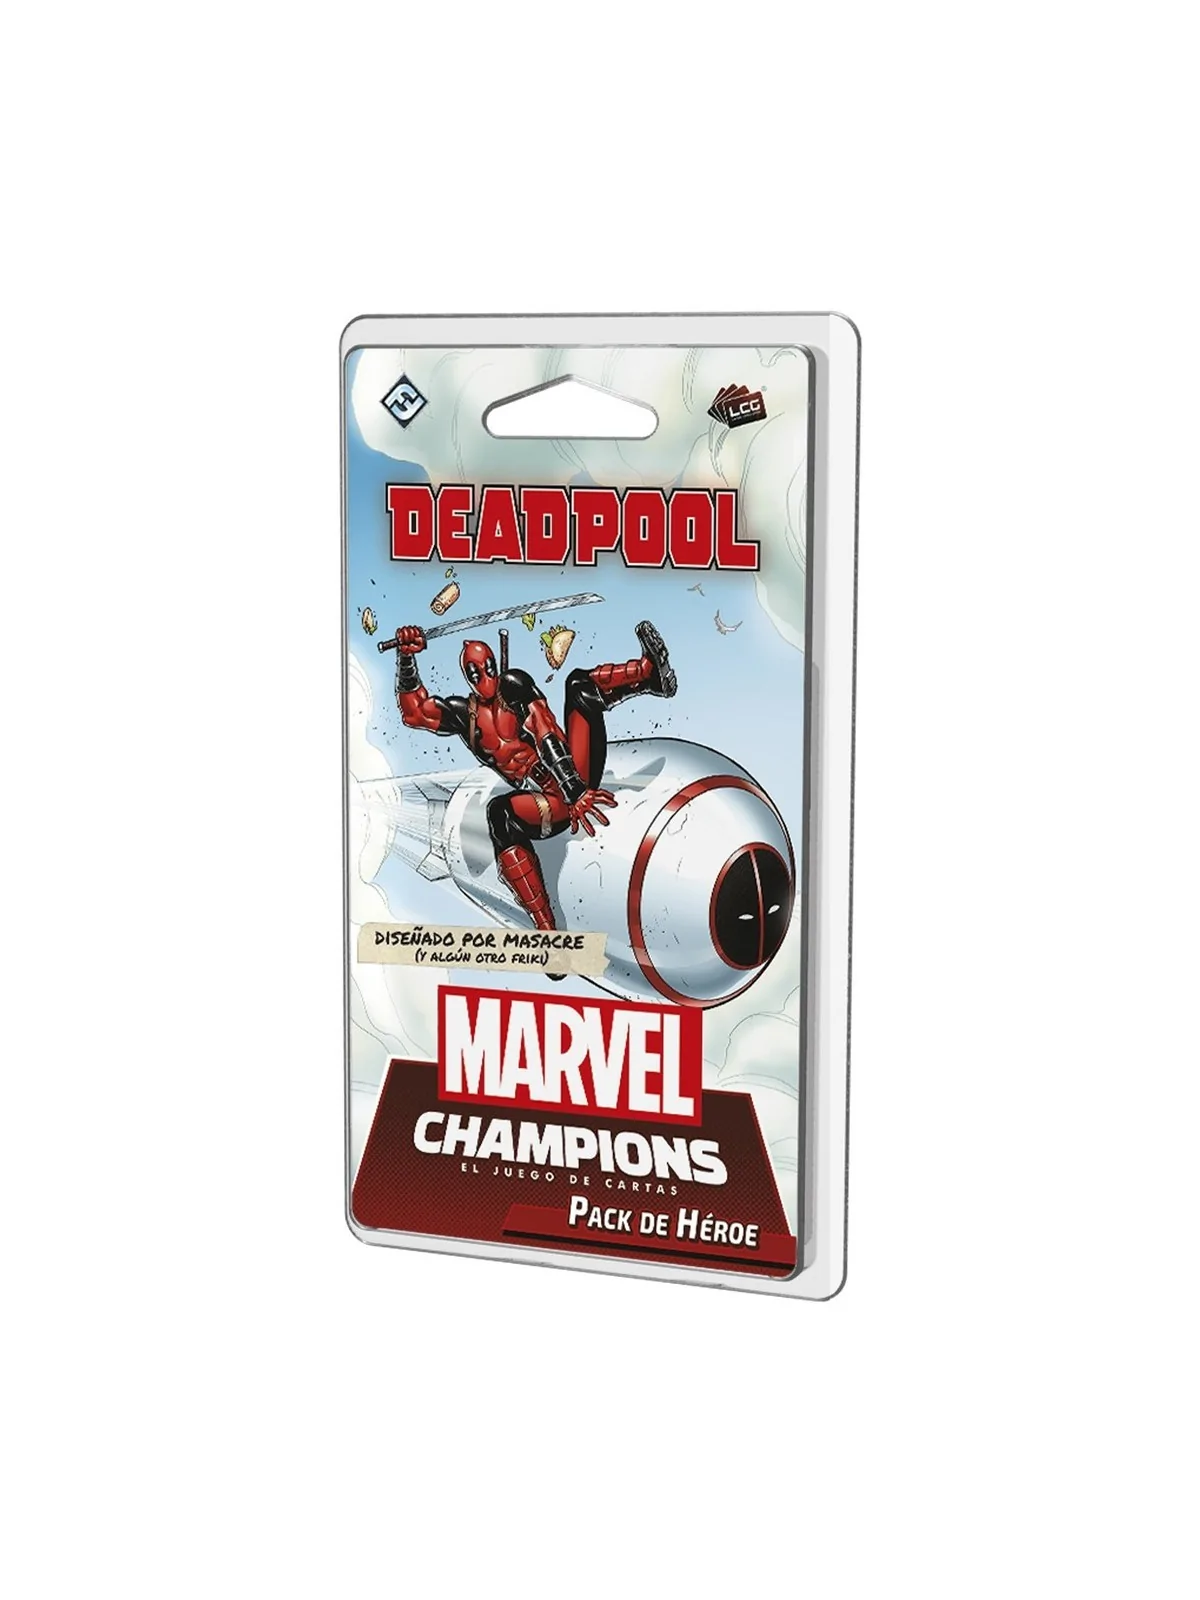 Comprar Marvel Champions: Deadpool Expanded barato al mejor precio 18,